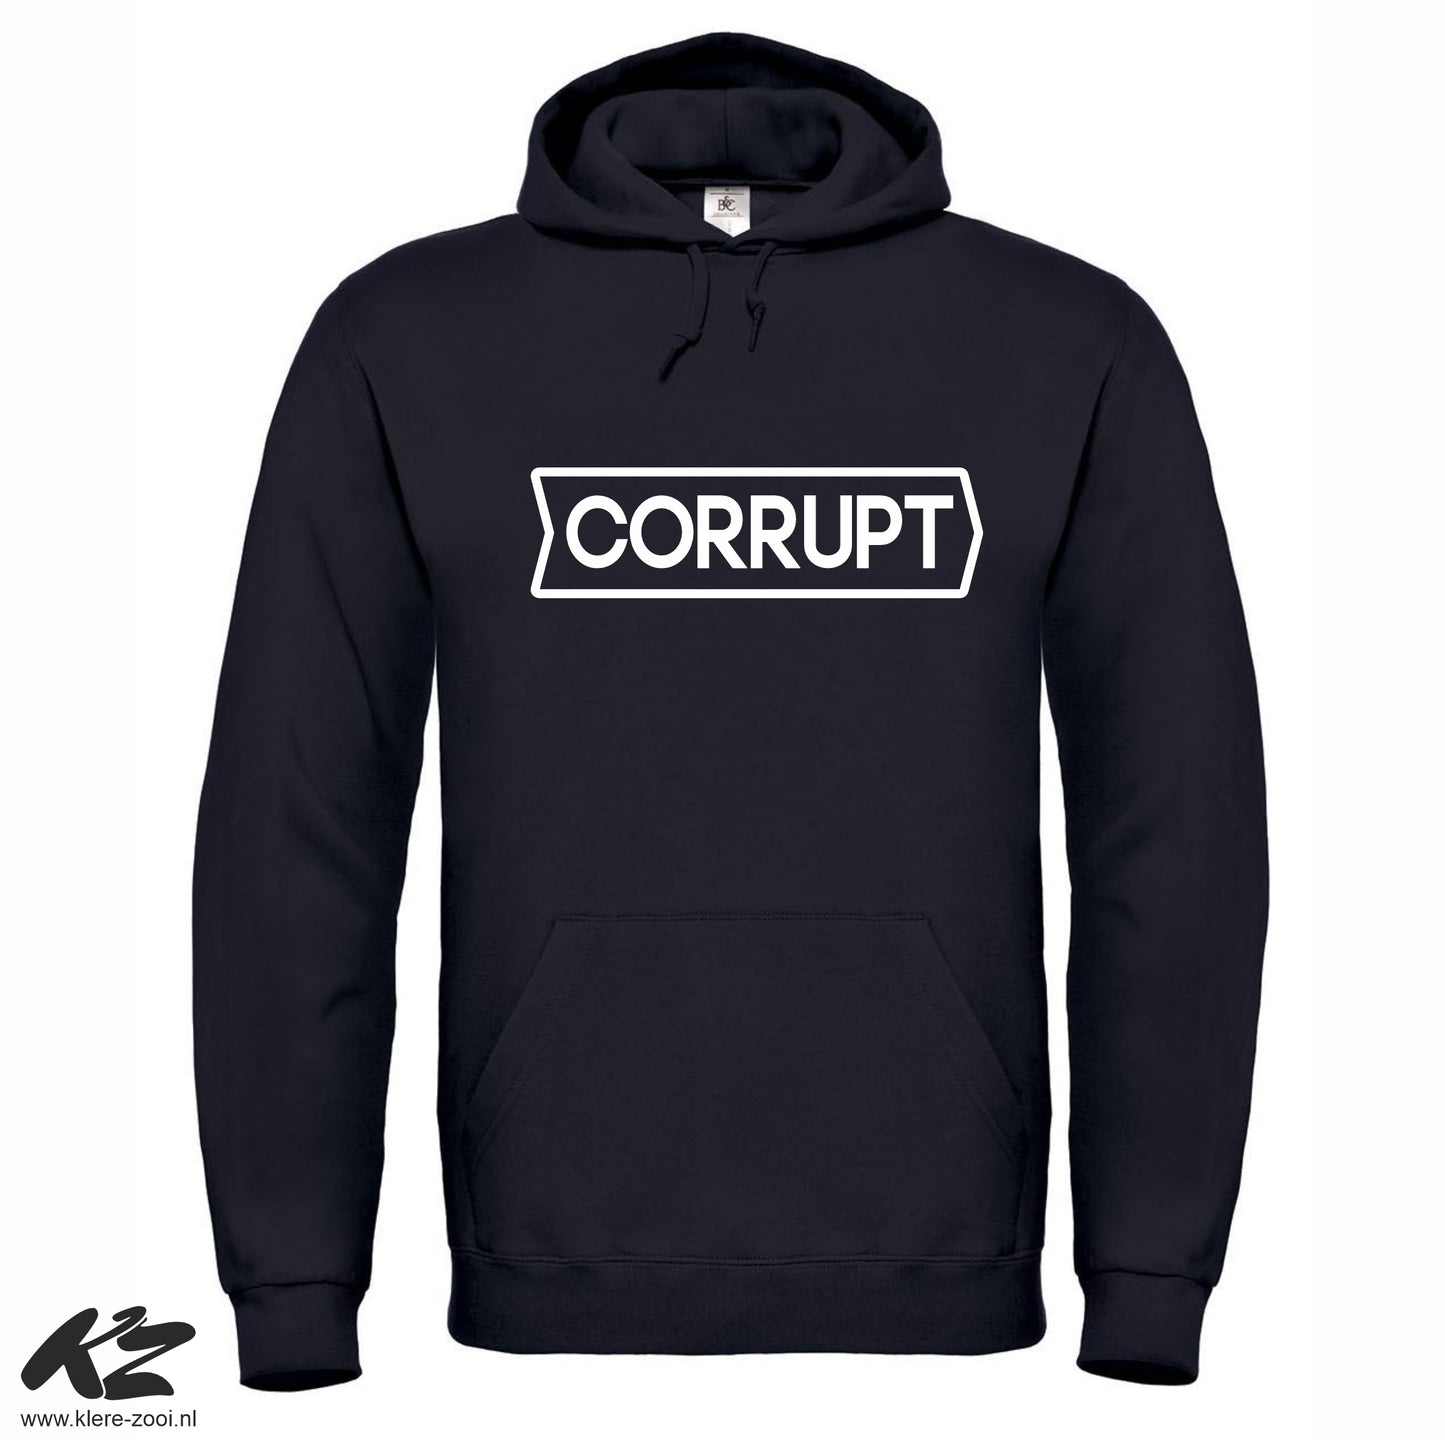 Corrupt - Hoodie  3XL